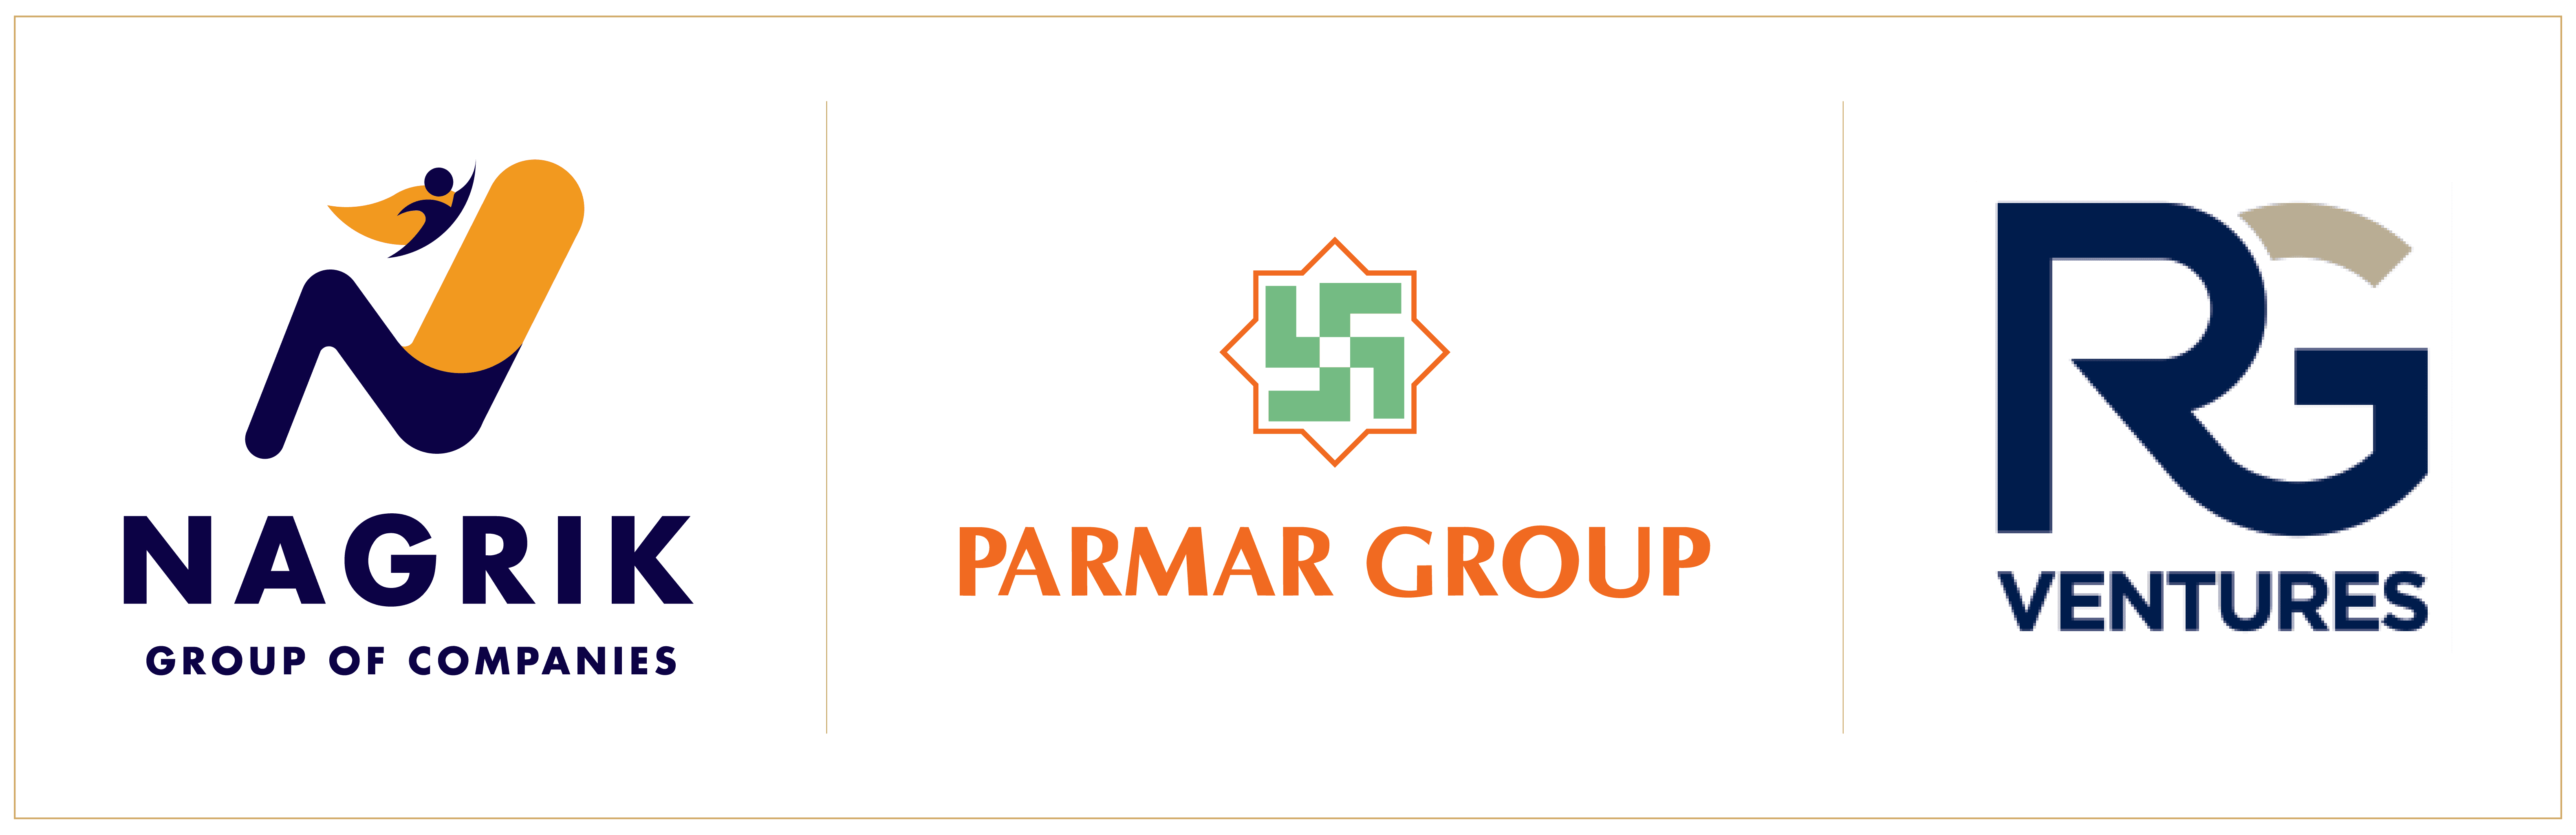 venture by nagrik group,parmar group & rg ventures